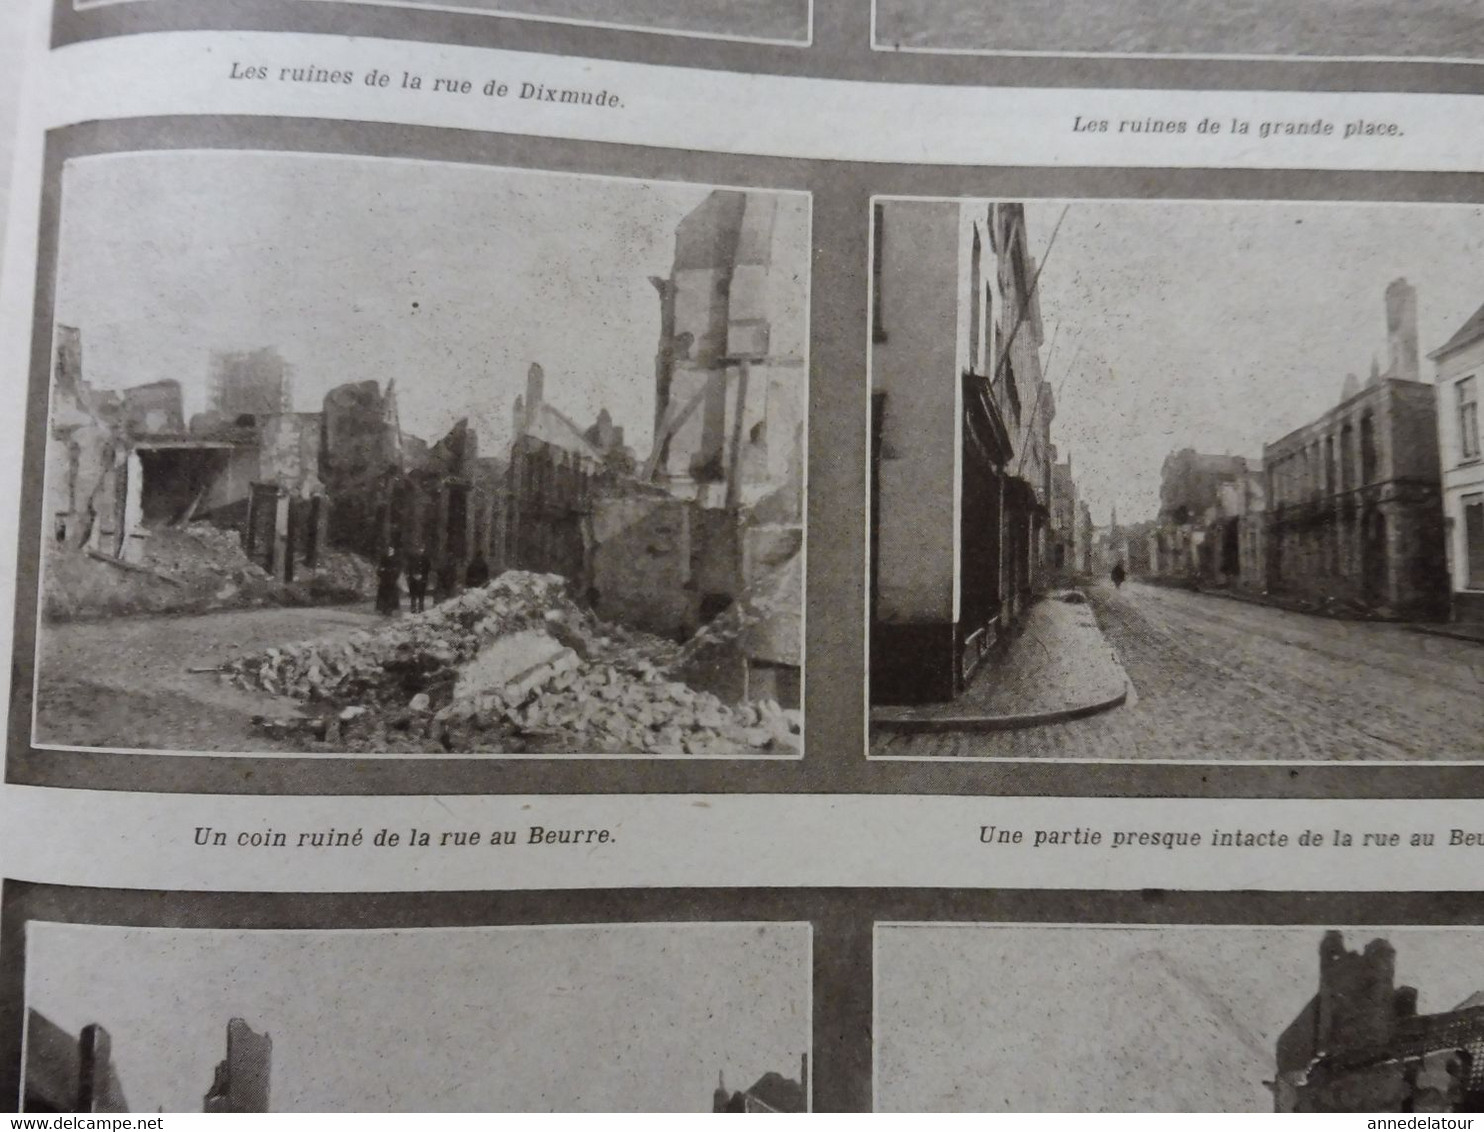 1914 LPDF:Kronprinz; Maroc,Belgique, La-Ferté-sous-J, Trilport, Blankenberghe, Ramscapelle,Pervyse;Tranchées belges, Etc